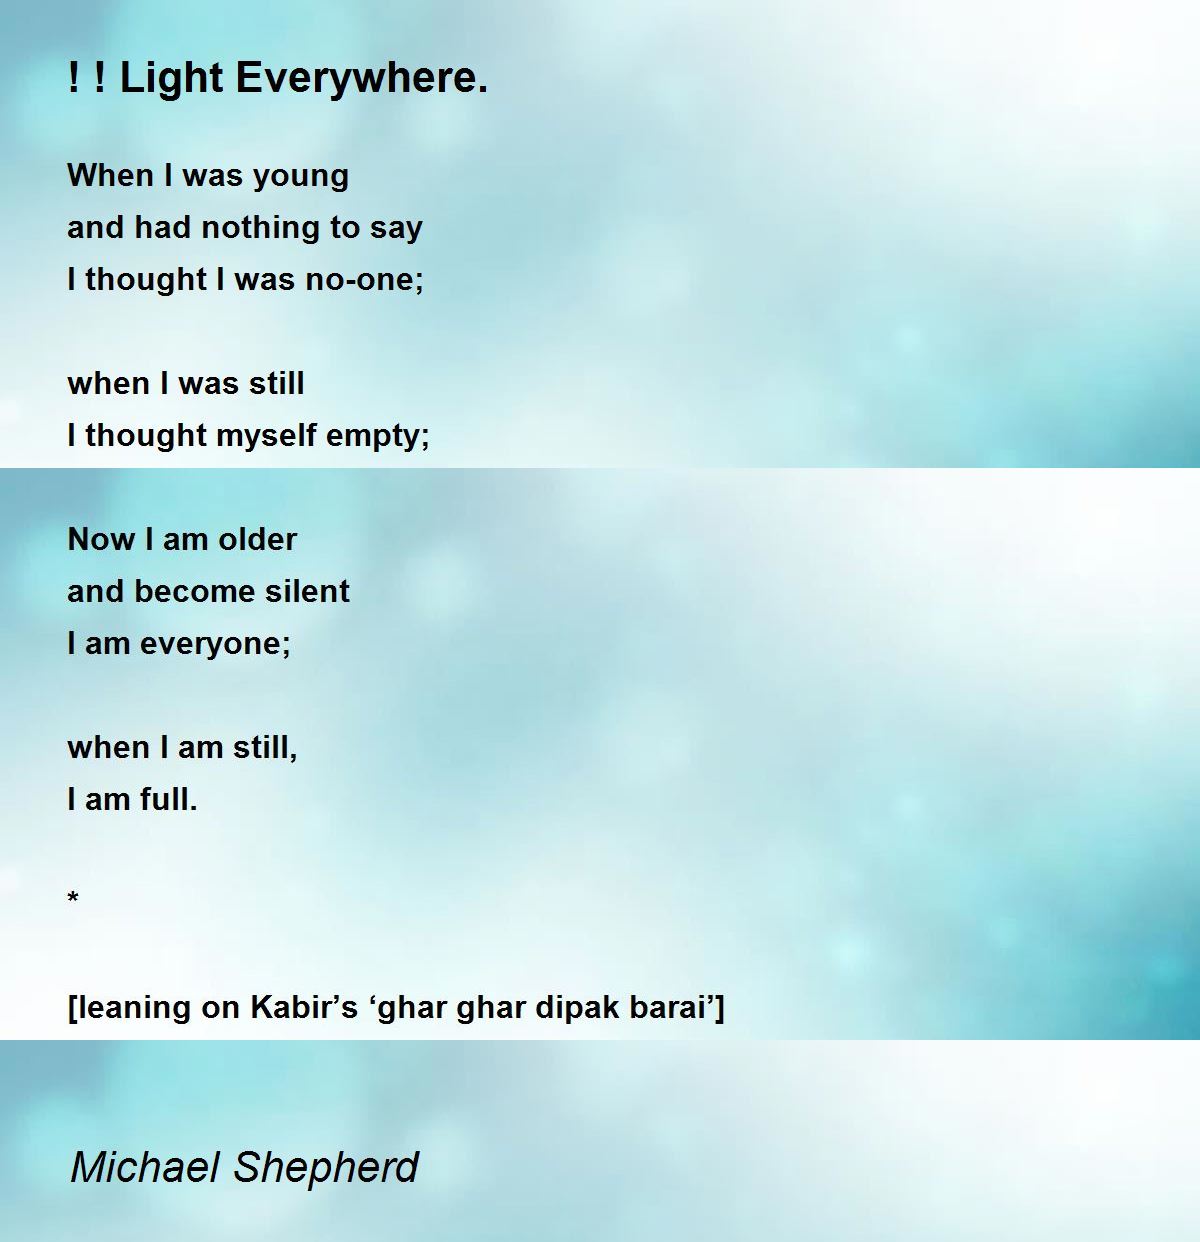 Light Everywhere. - ! ! Light Everywhere. Poem by Michael Shepherd